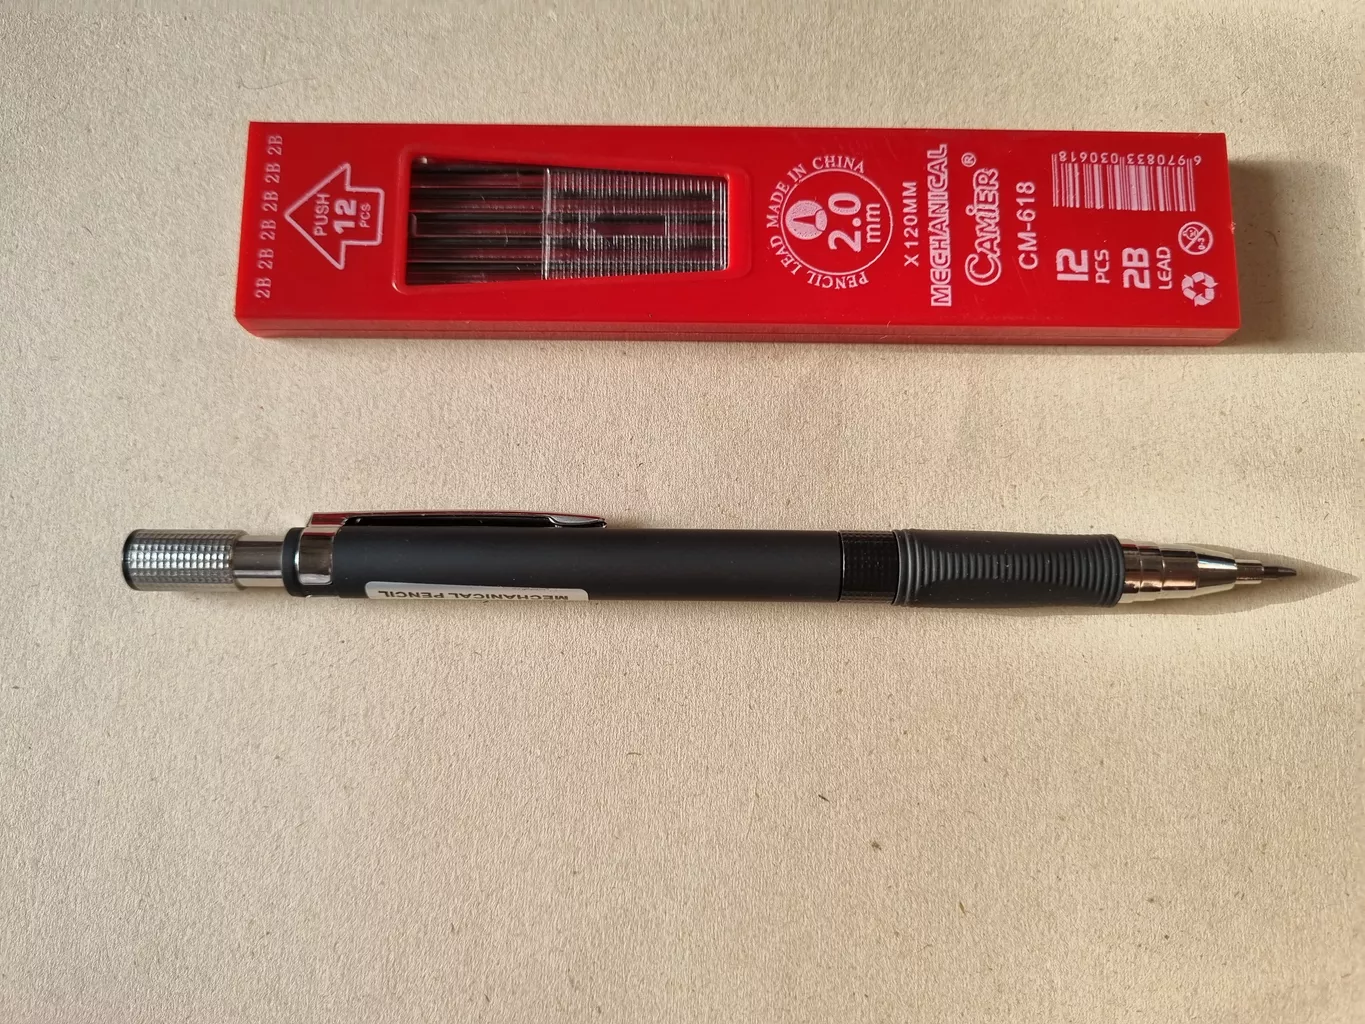 مداد نوکی 2.0 میلی متری مدل ZY-520 کد 520 به همراه نوک مداد نوکی